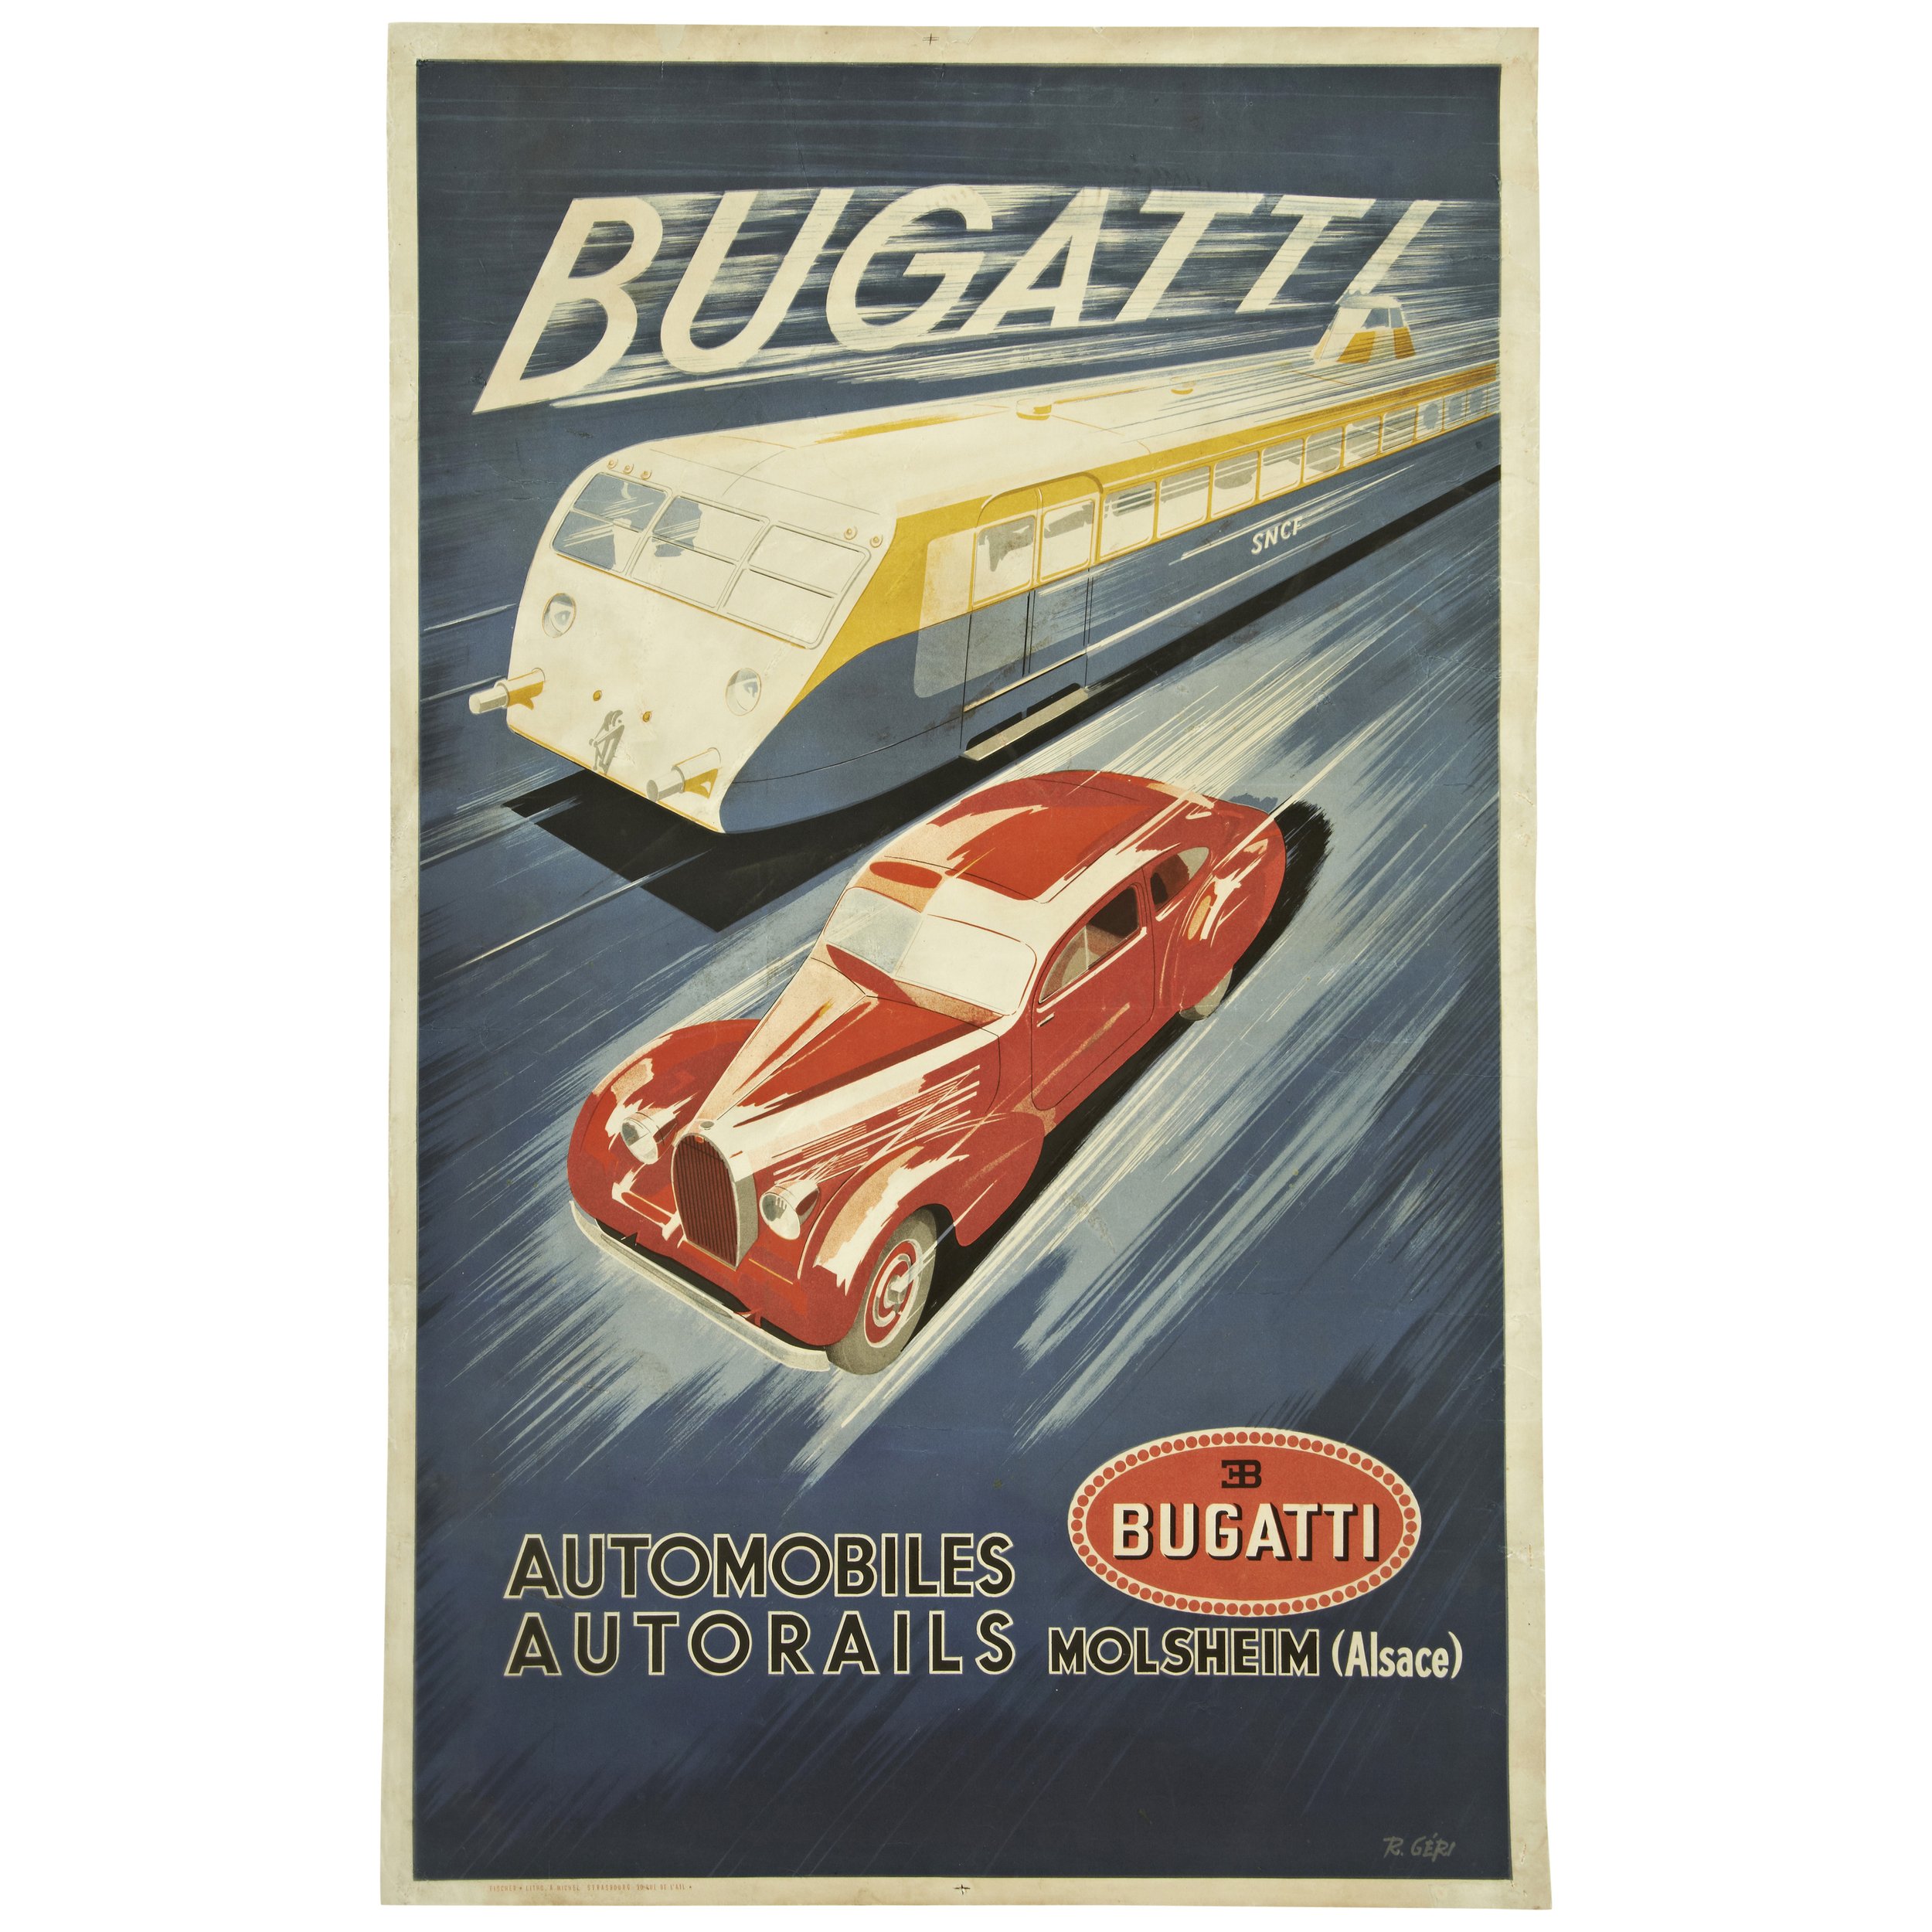 Bugatti Automobiles Autorails Bugatti Poster.jpg